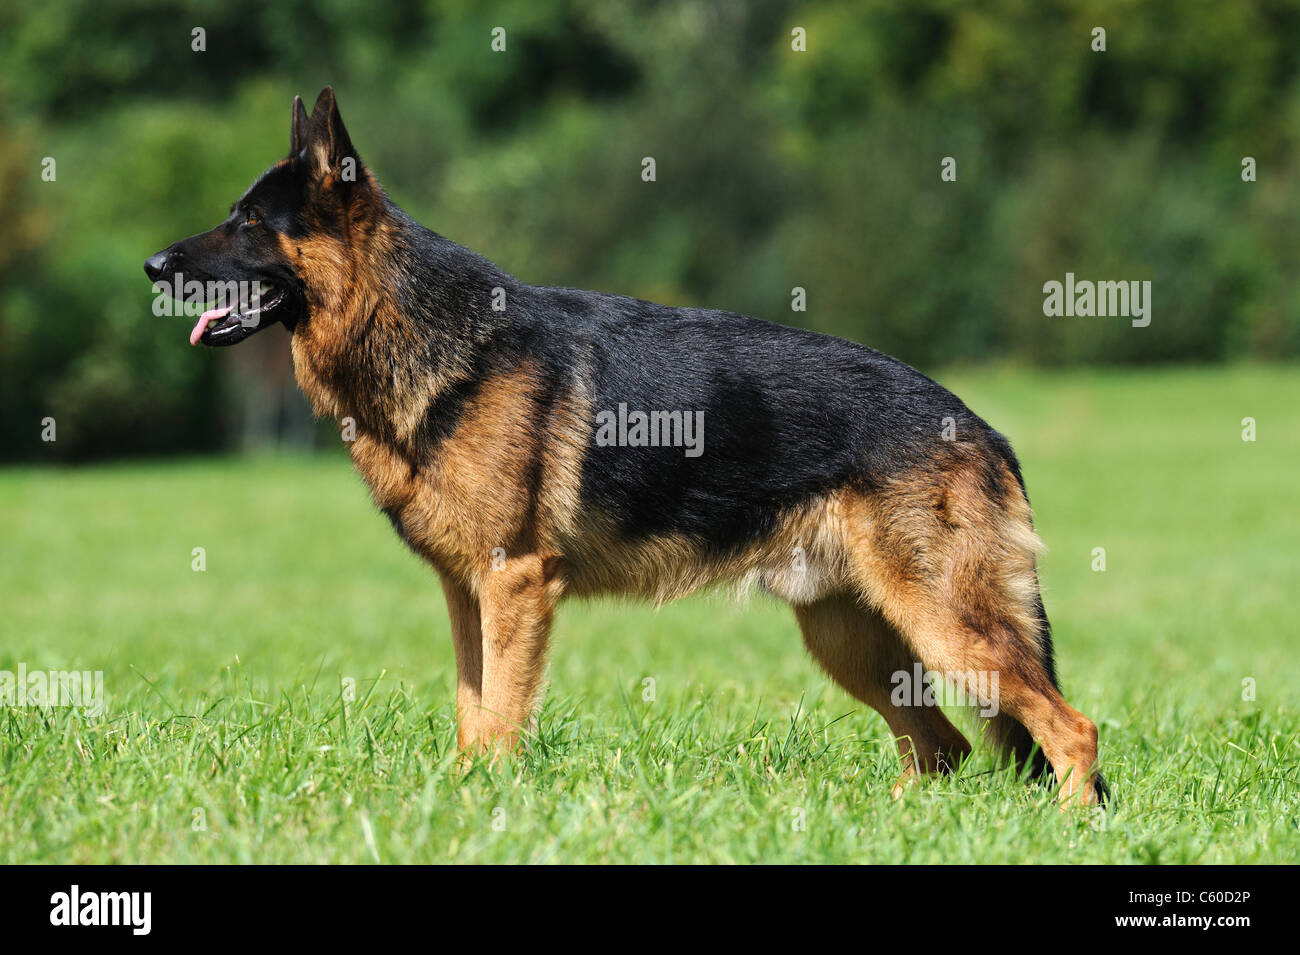 Pastore Tedesco cane, alsaziano (Canis lupus familiaris). Nero-e-tan a pelo corto maschio in piedi su un prato. Foto Stock